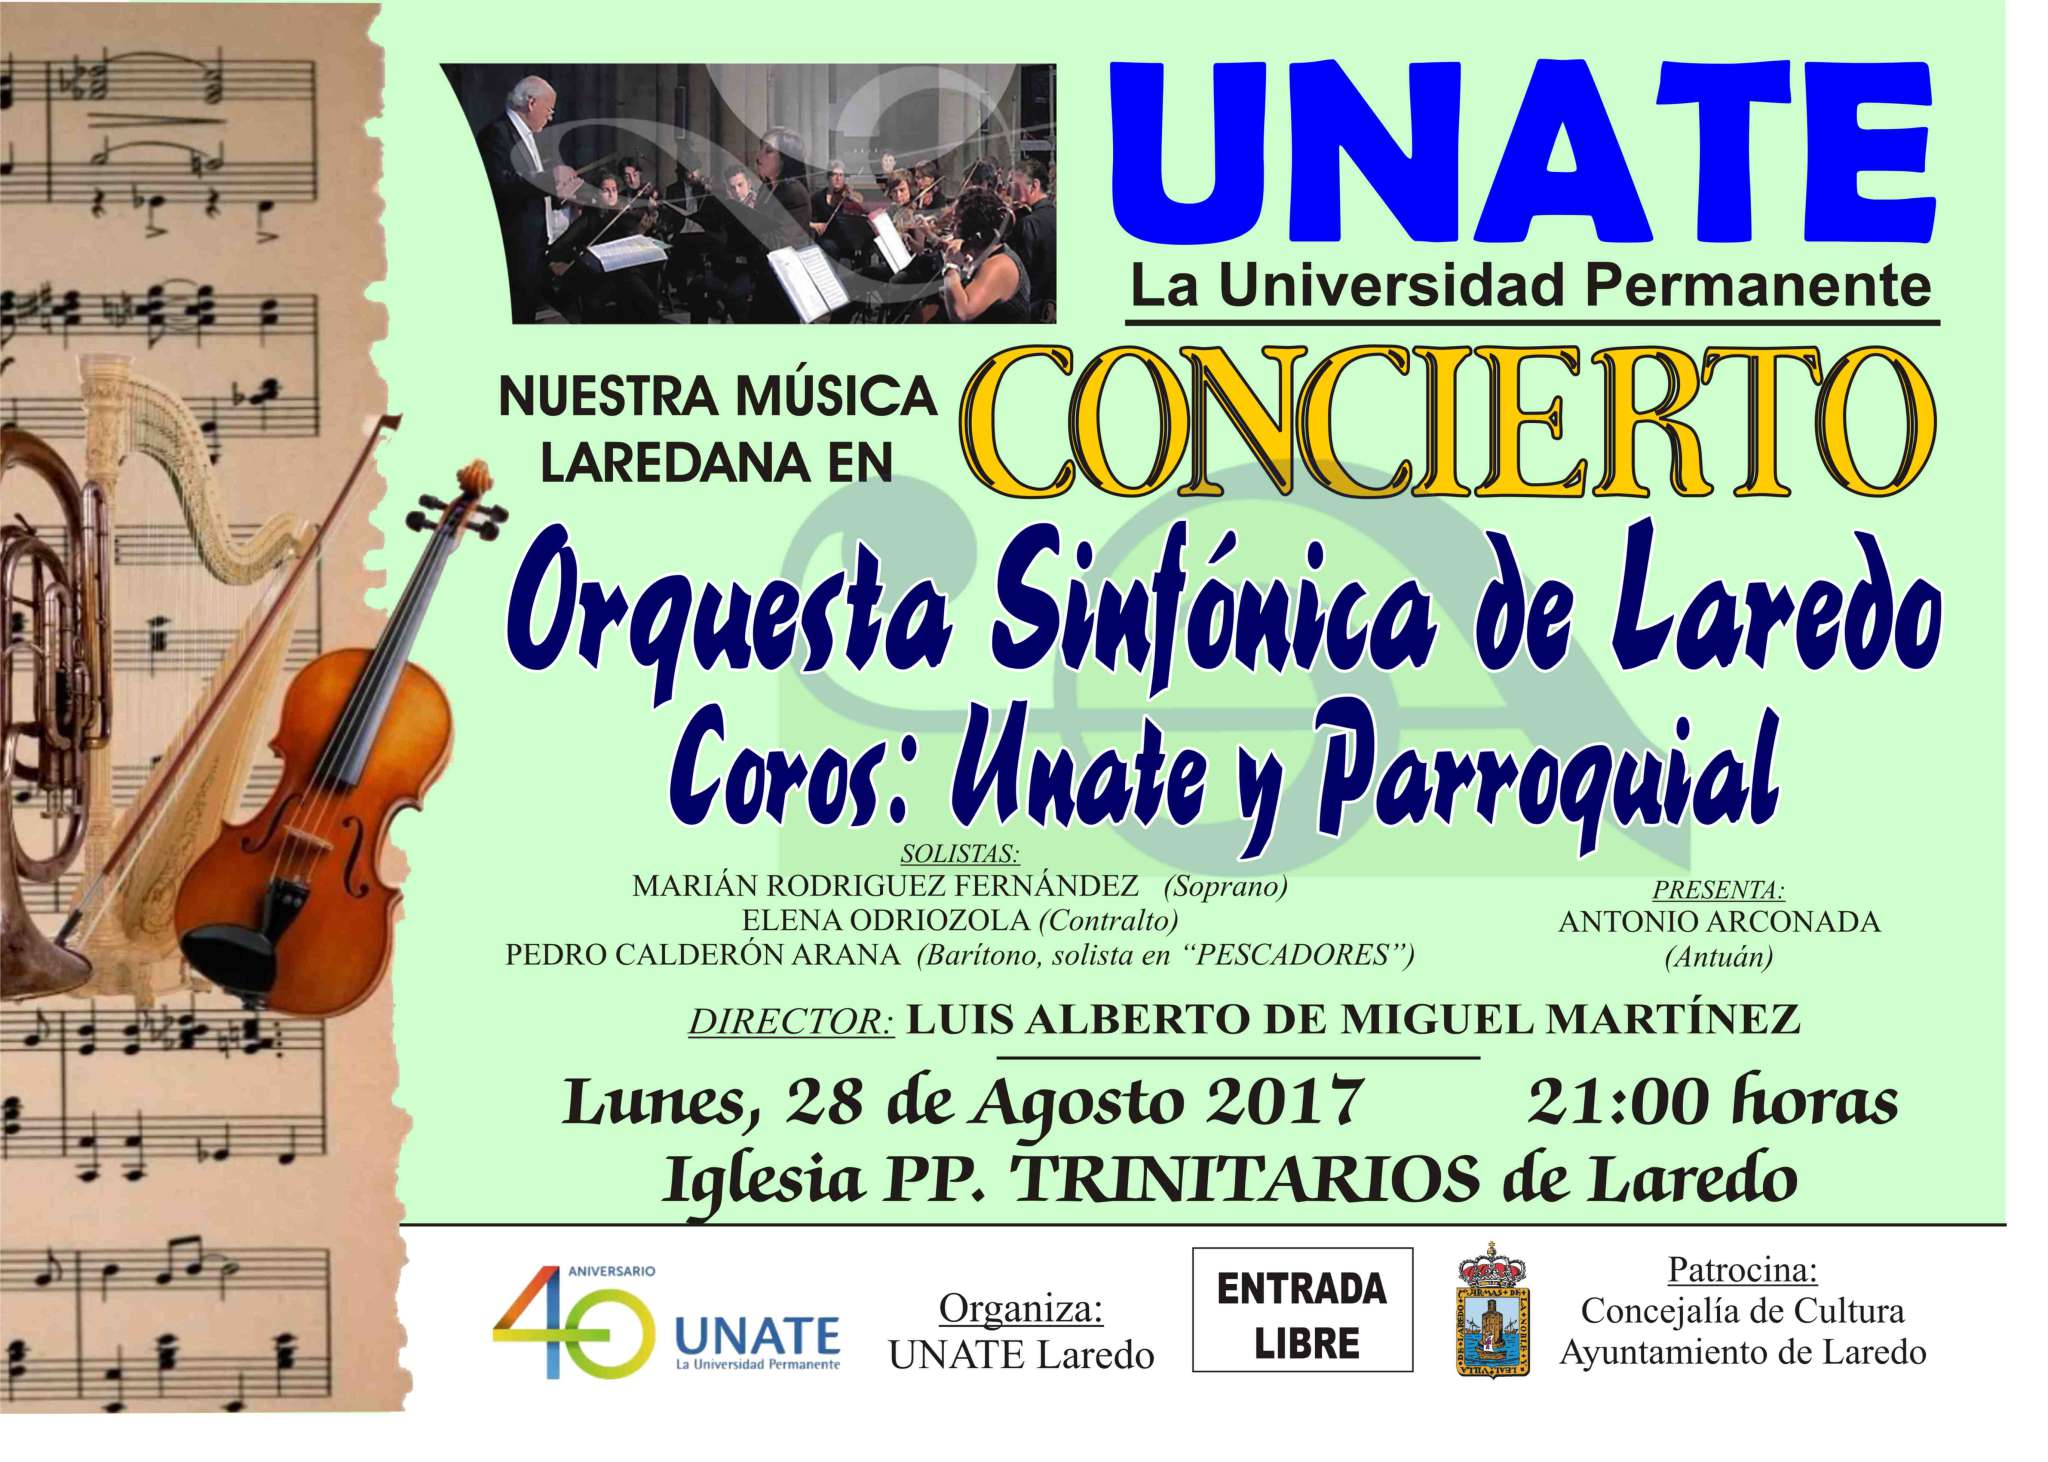 UNATE – Laredo organiza su concierto de verano.